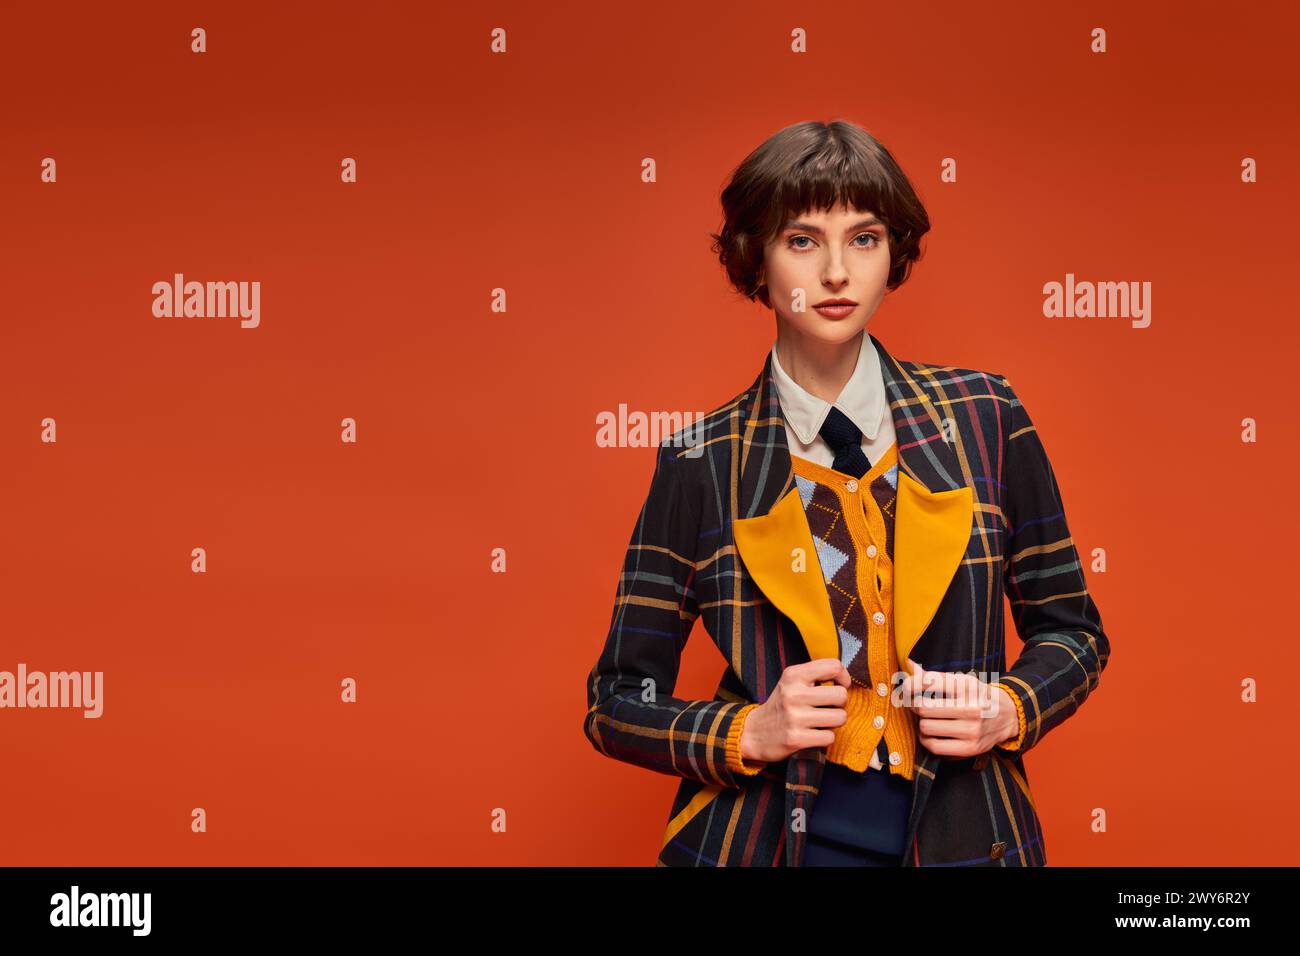 Stylischer Student mit kurzen Haaren in kariertem Blazer auf orangefarbenem Hintergrund, College-Uniform Stockfoto